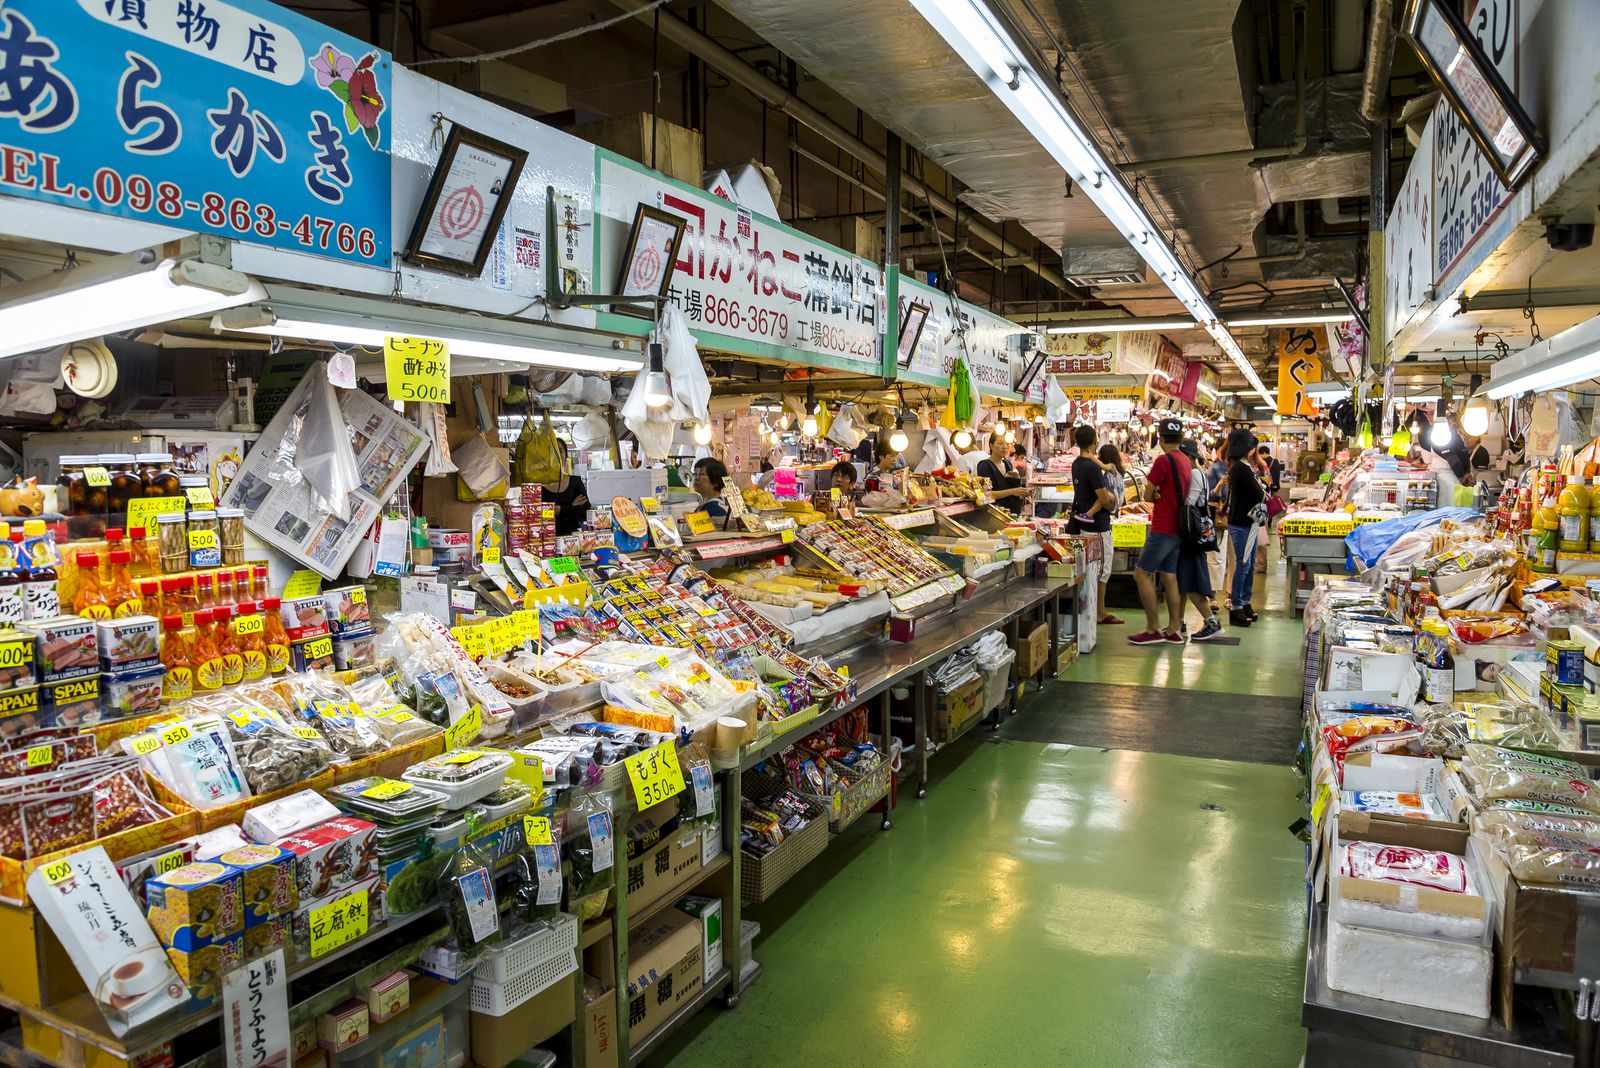 21最新 沖縄の人気フリーマーケット 露店ランキングtop1 Retrip リトリップ